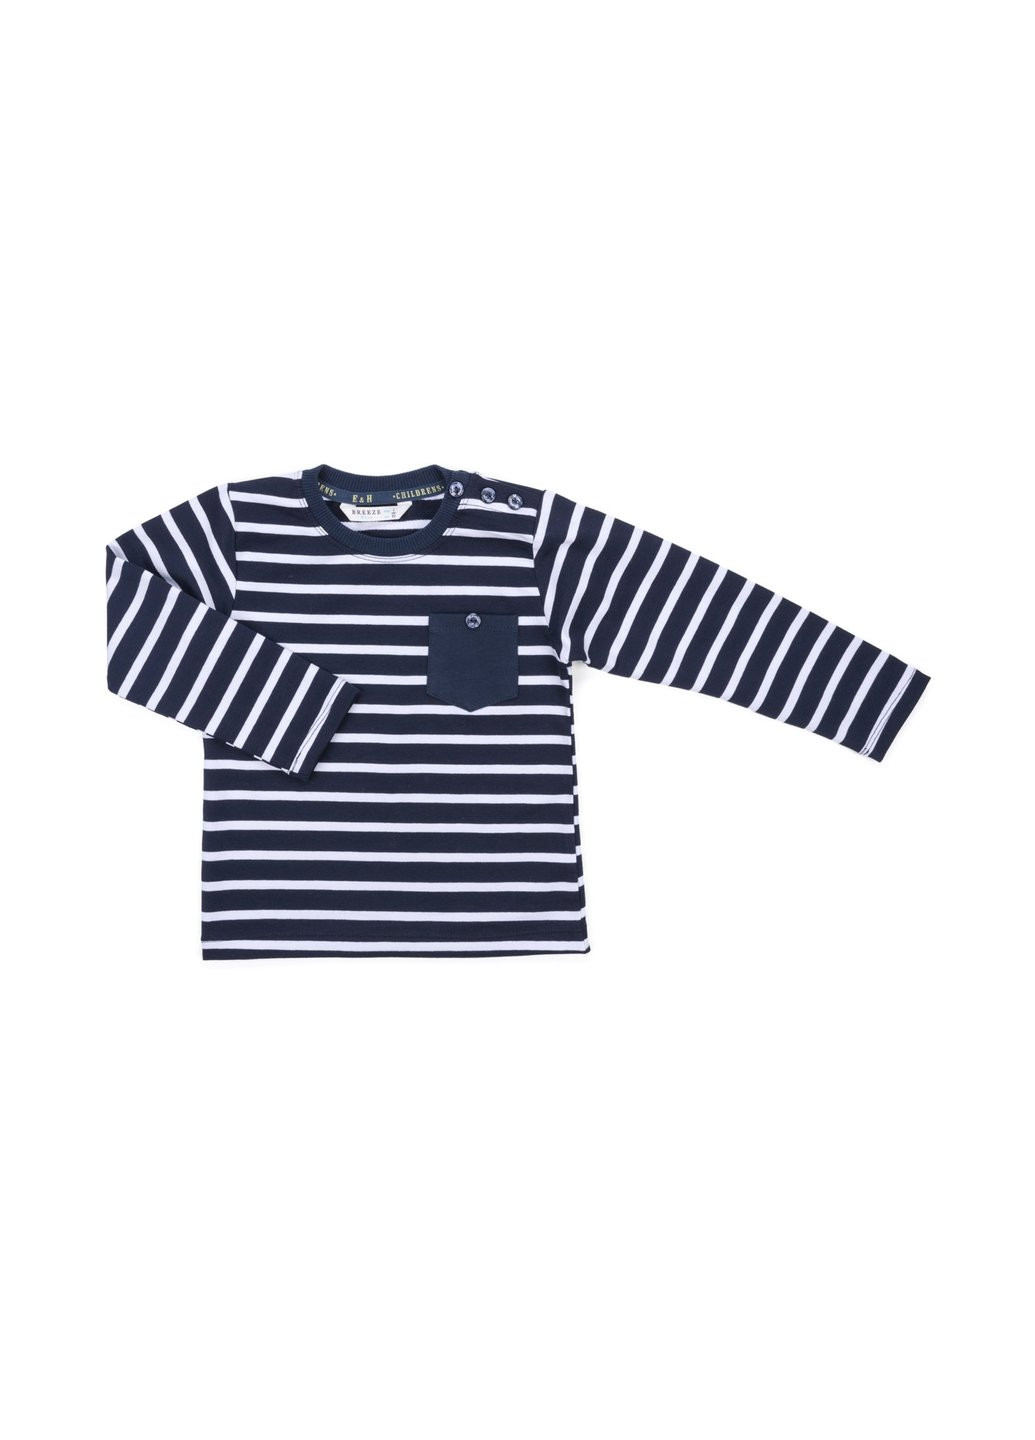 Комбинированный демисезонный набор детской одежды в полосочку и с карманчиком (8999-80b-darkblue) Breeze